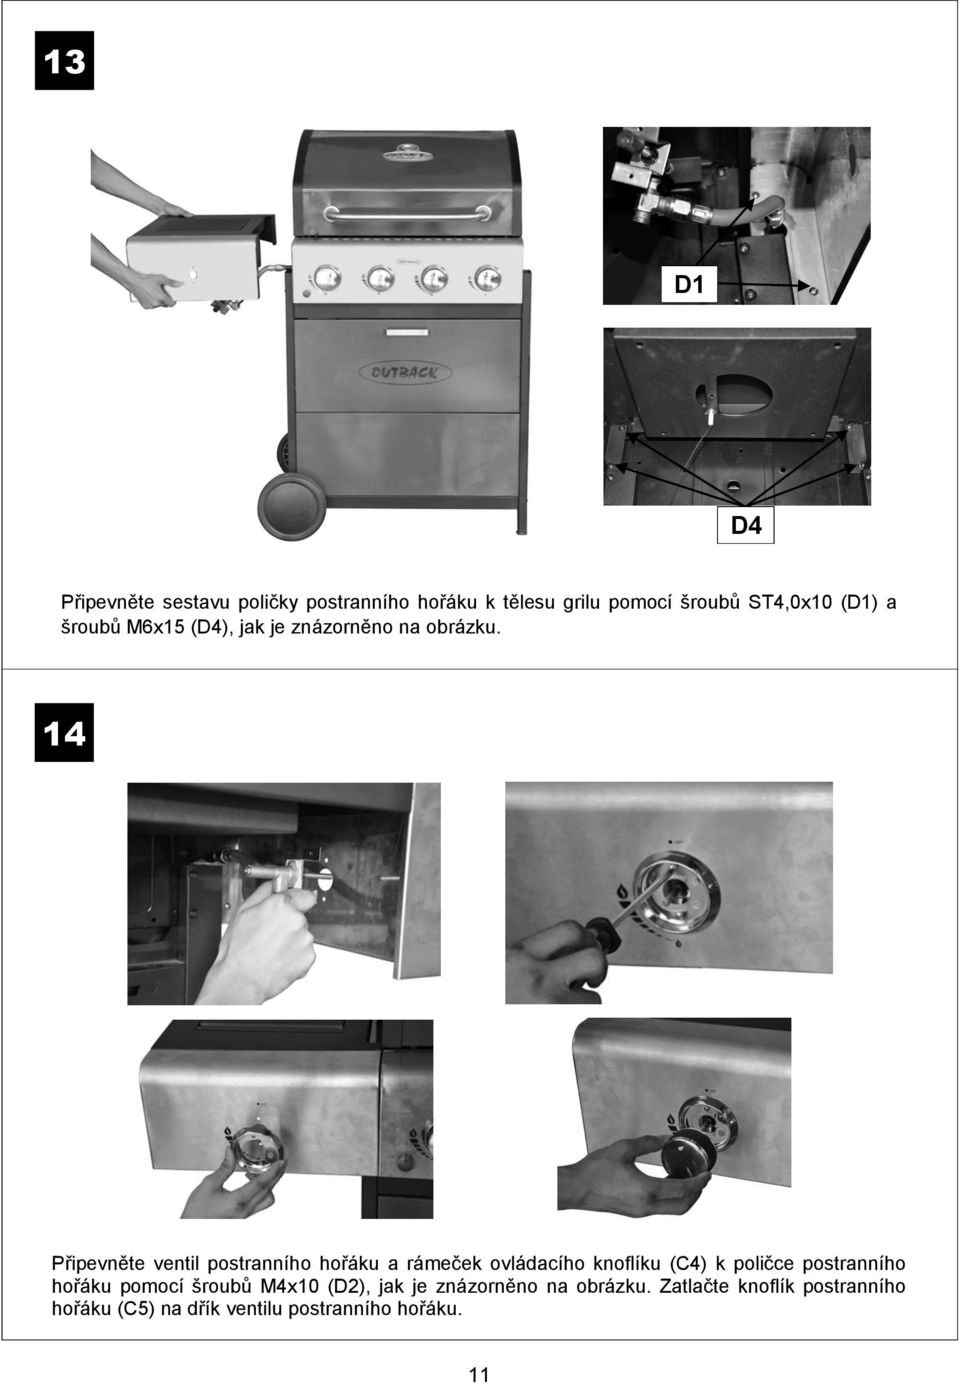 14 Připevněte ventil postranního hořáku a rámeček ovládacího knoflíku (C4) k poličce postranního